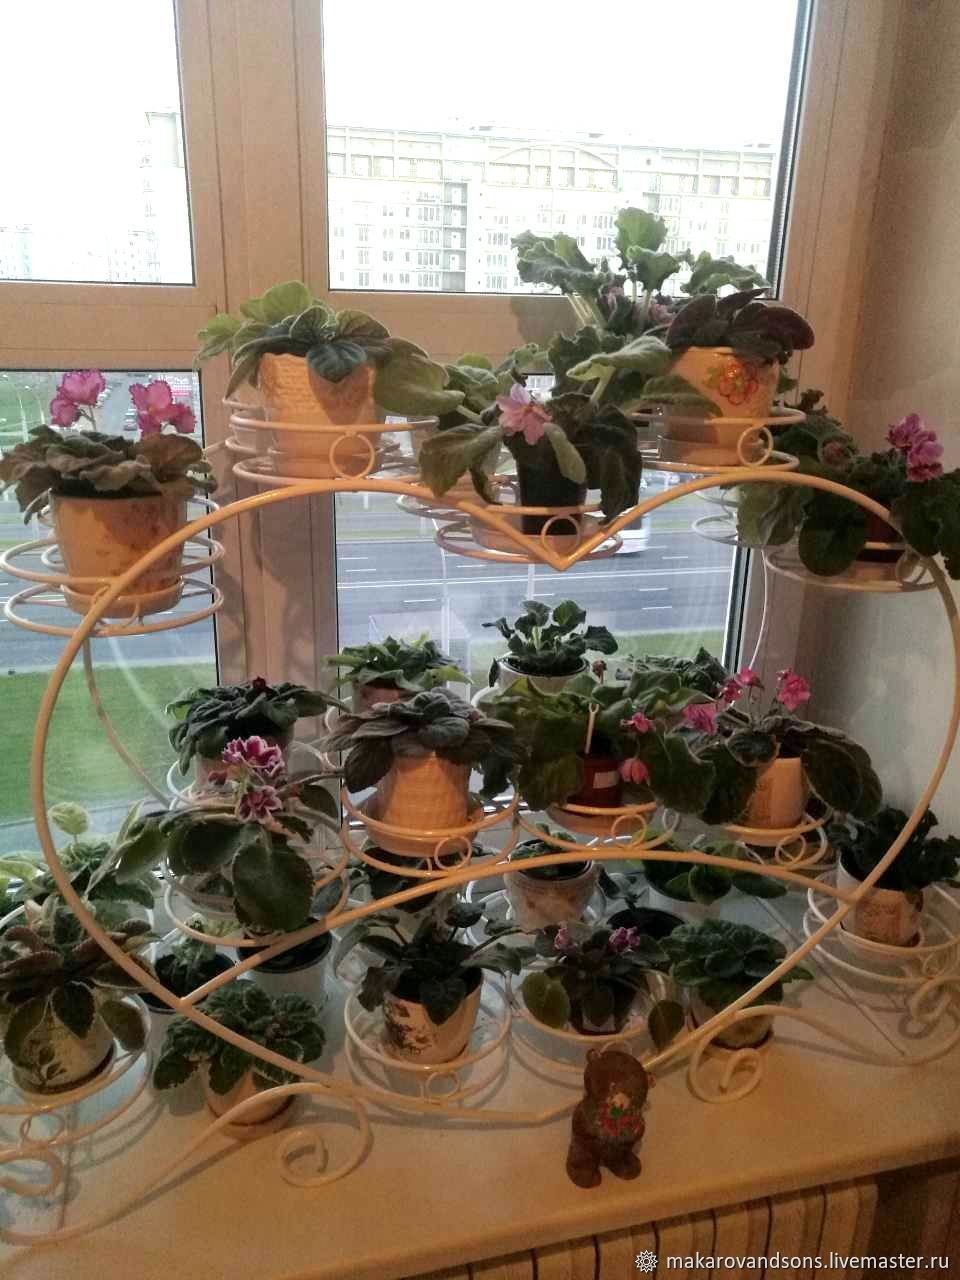 полка для растений на окно